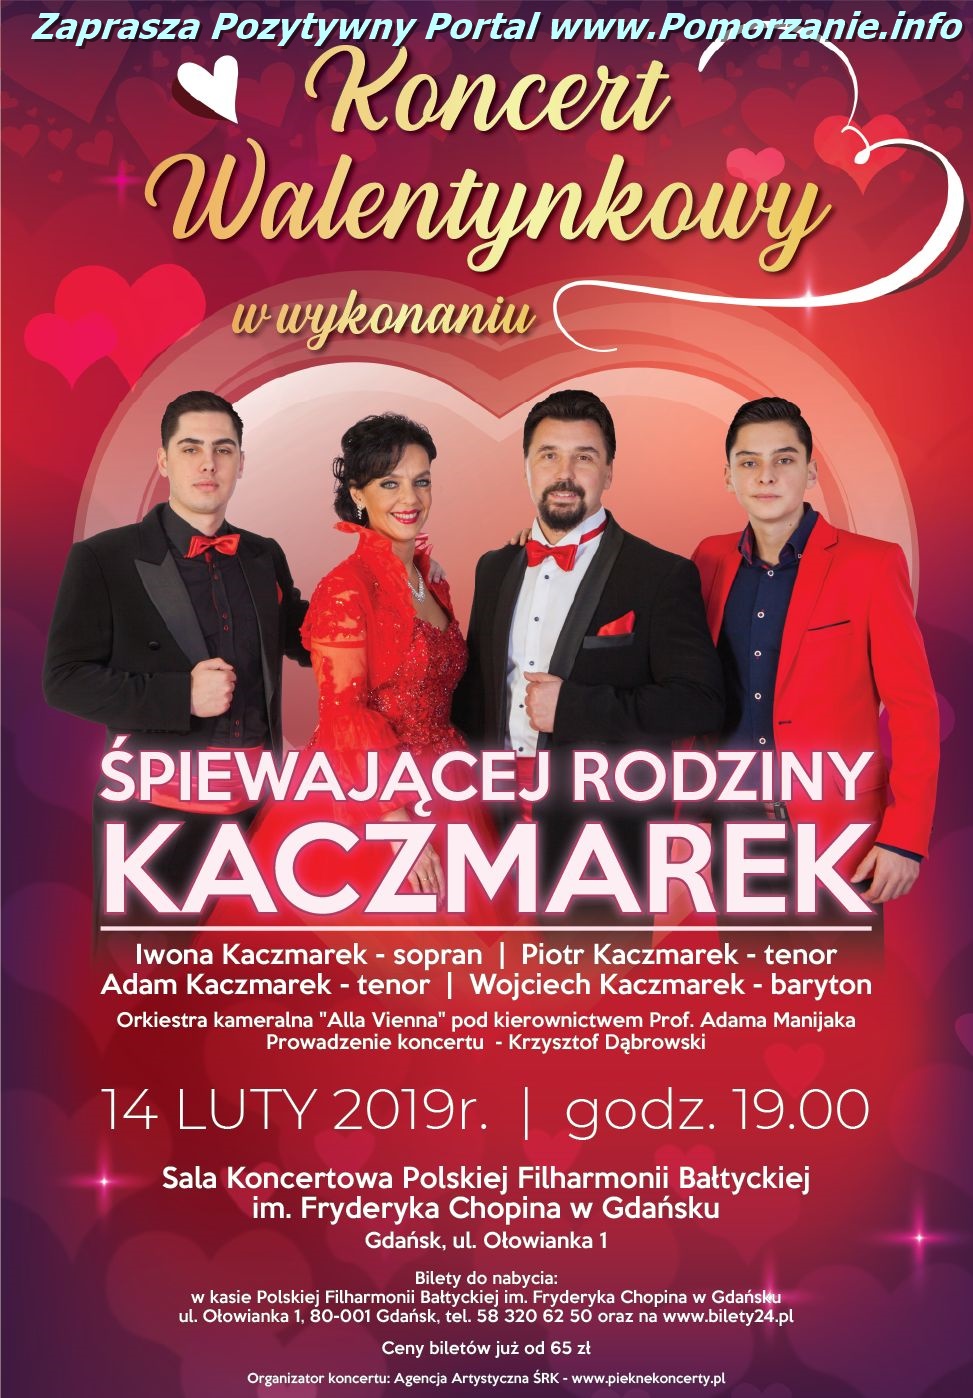 Koncert Walentynkowy : Śpiewająca Rodzina Kaczmarków